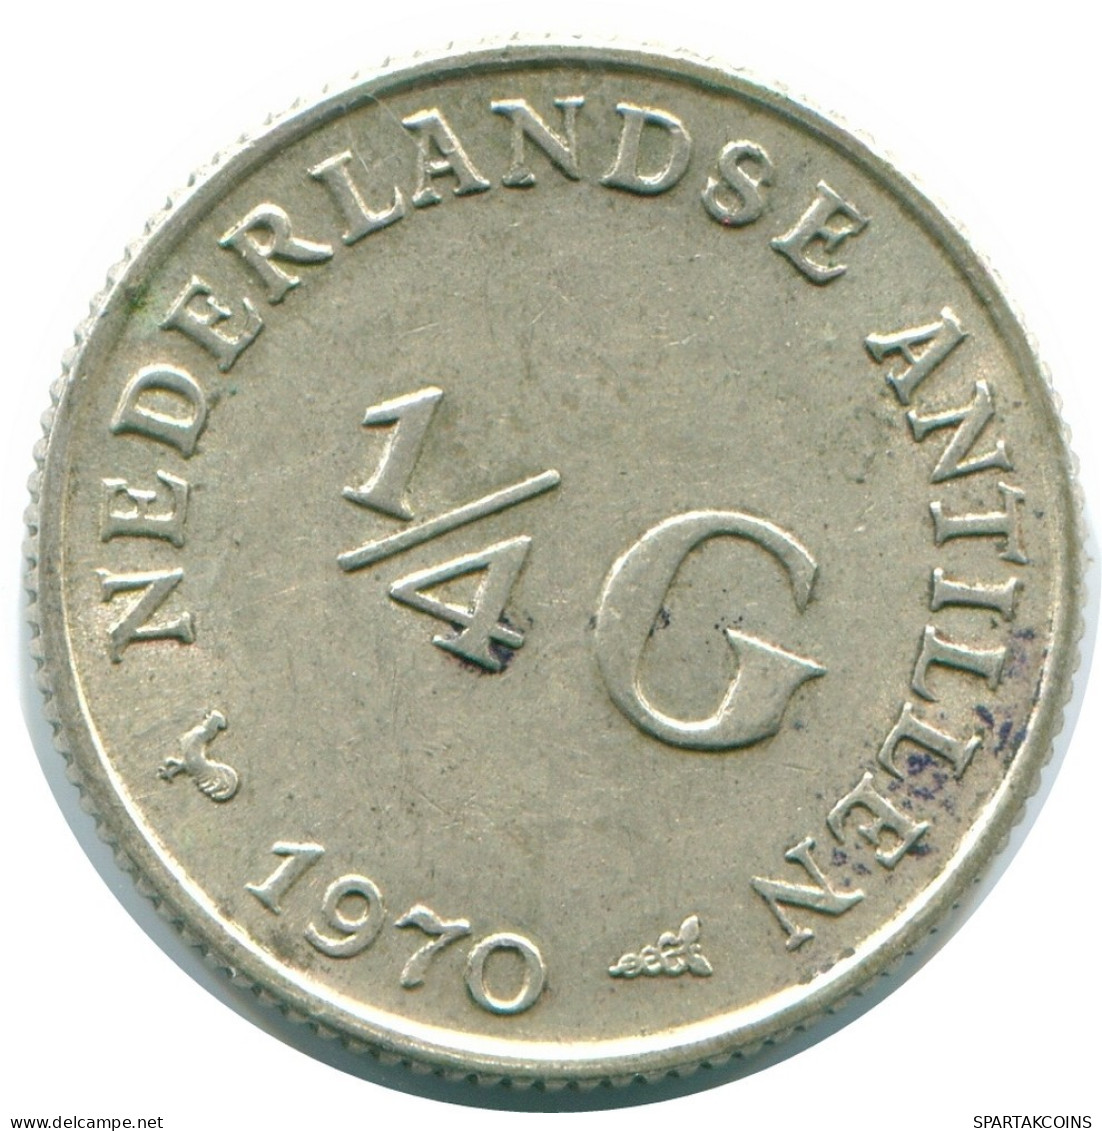 1/4 GULDEN 1970 NIEDERLÄNDISCHE ANTILLEN SILBER Koloniale Münze #NL11693.4.D.A - Nederlandse Antillen